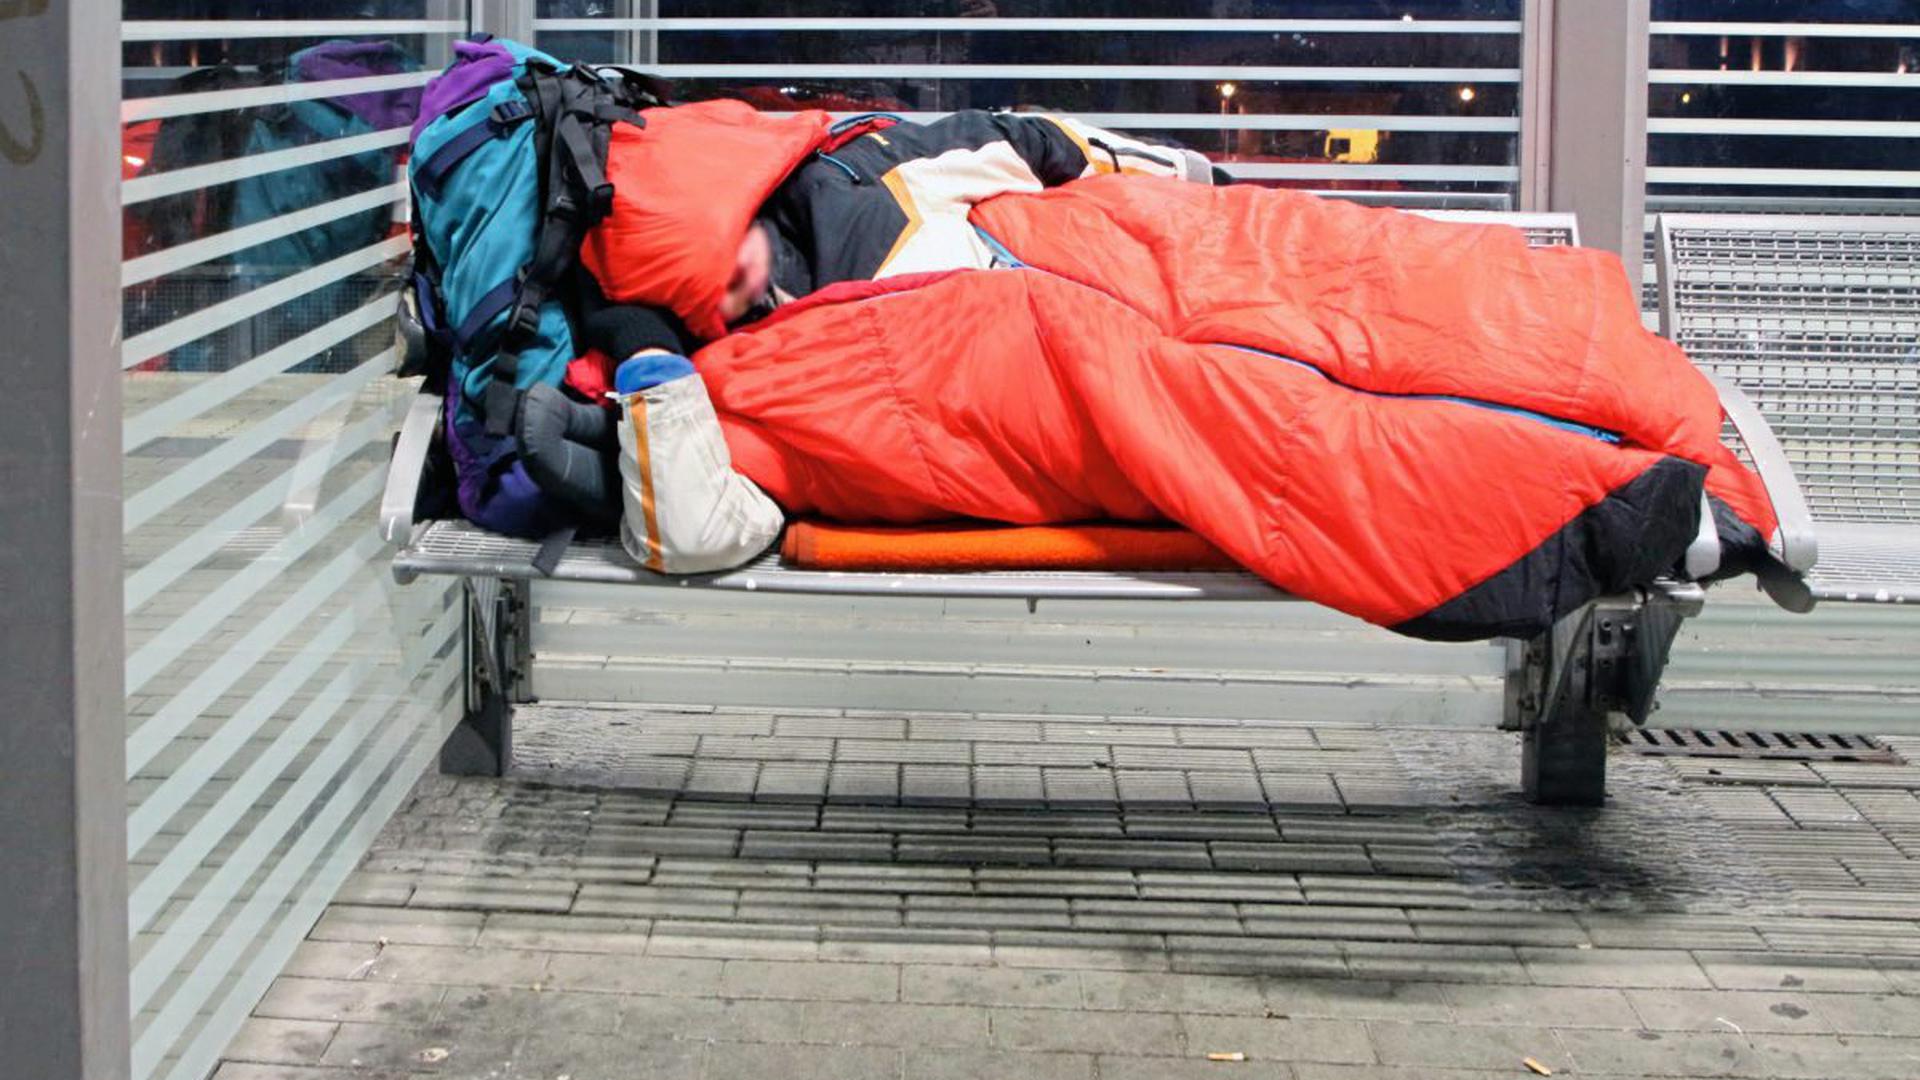 Eine obdachlose Person schläft in einem Schlafsack auf einer öffentlichen Sitzgelegenheit.